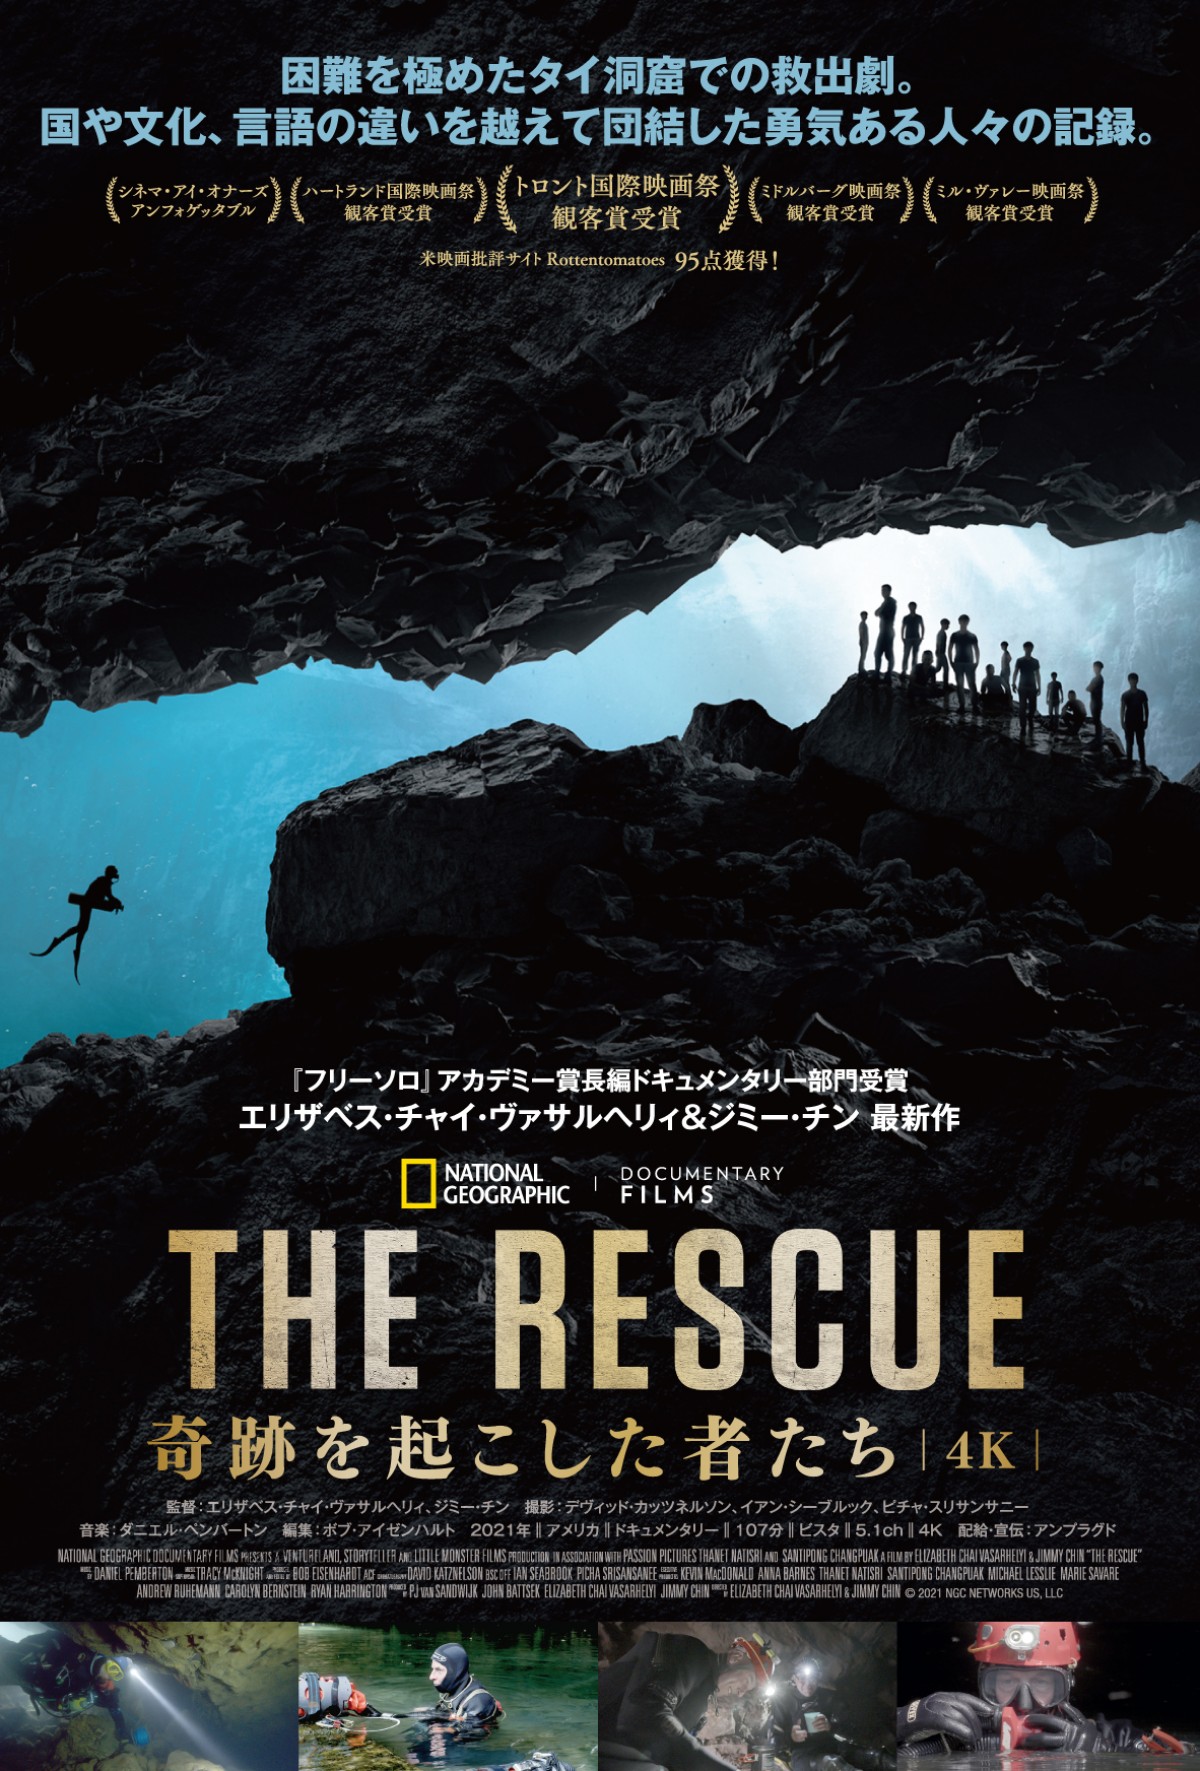 タイの洞窟遭難事故ドキュメンタリー『THE RESCUE 奇跡を起こした者たち』公開決定